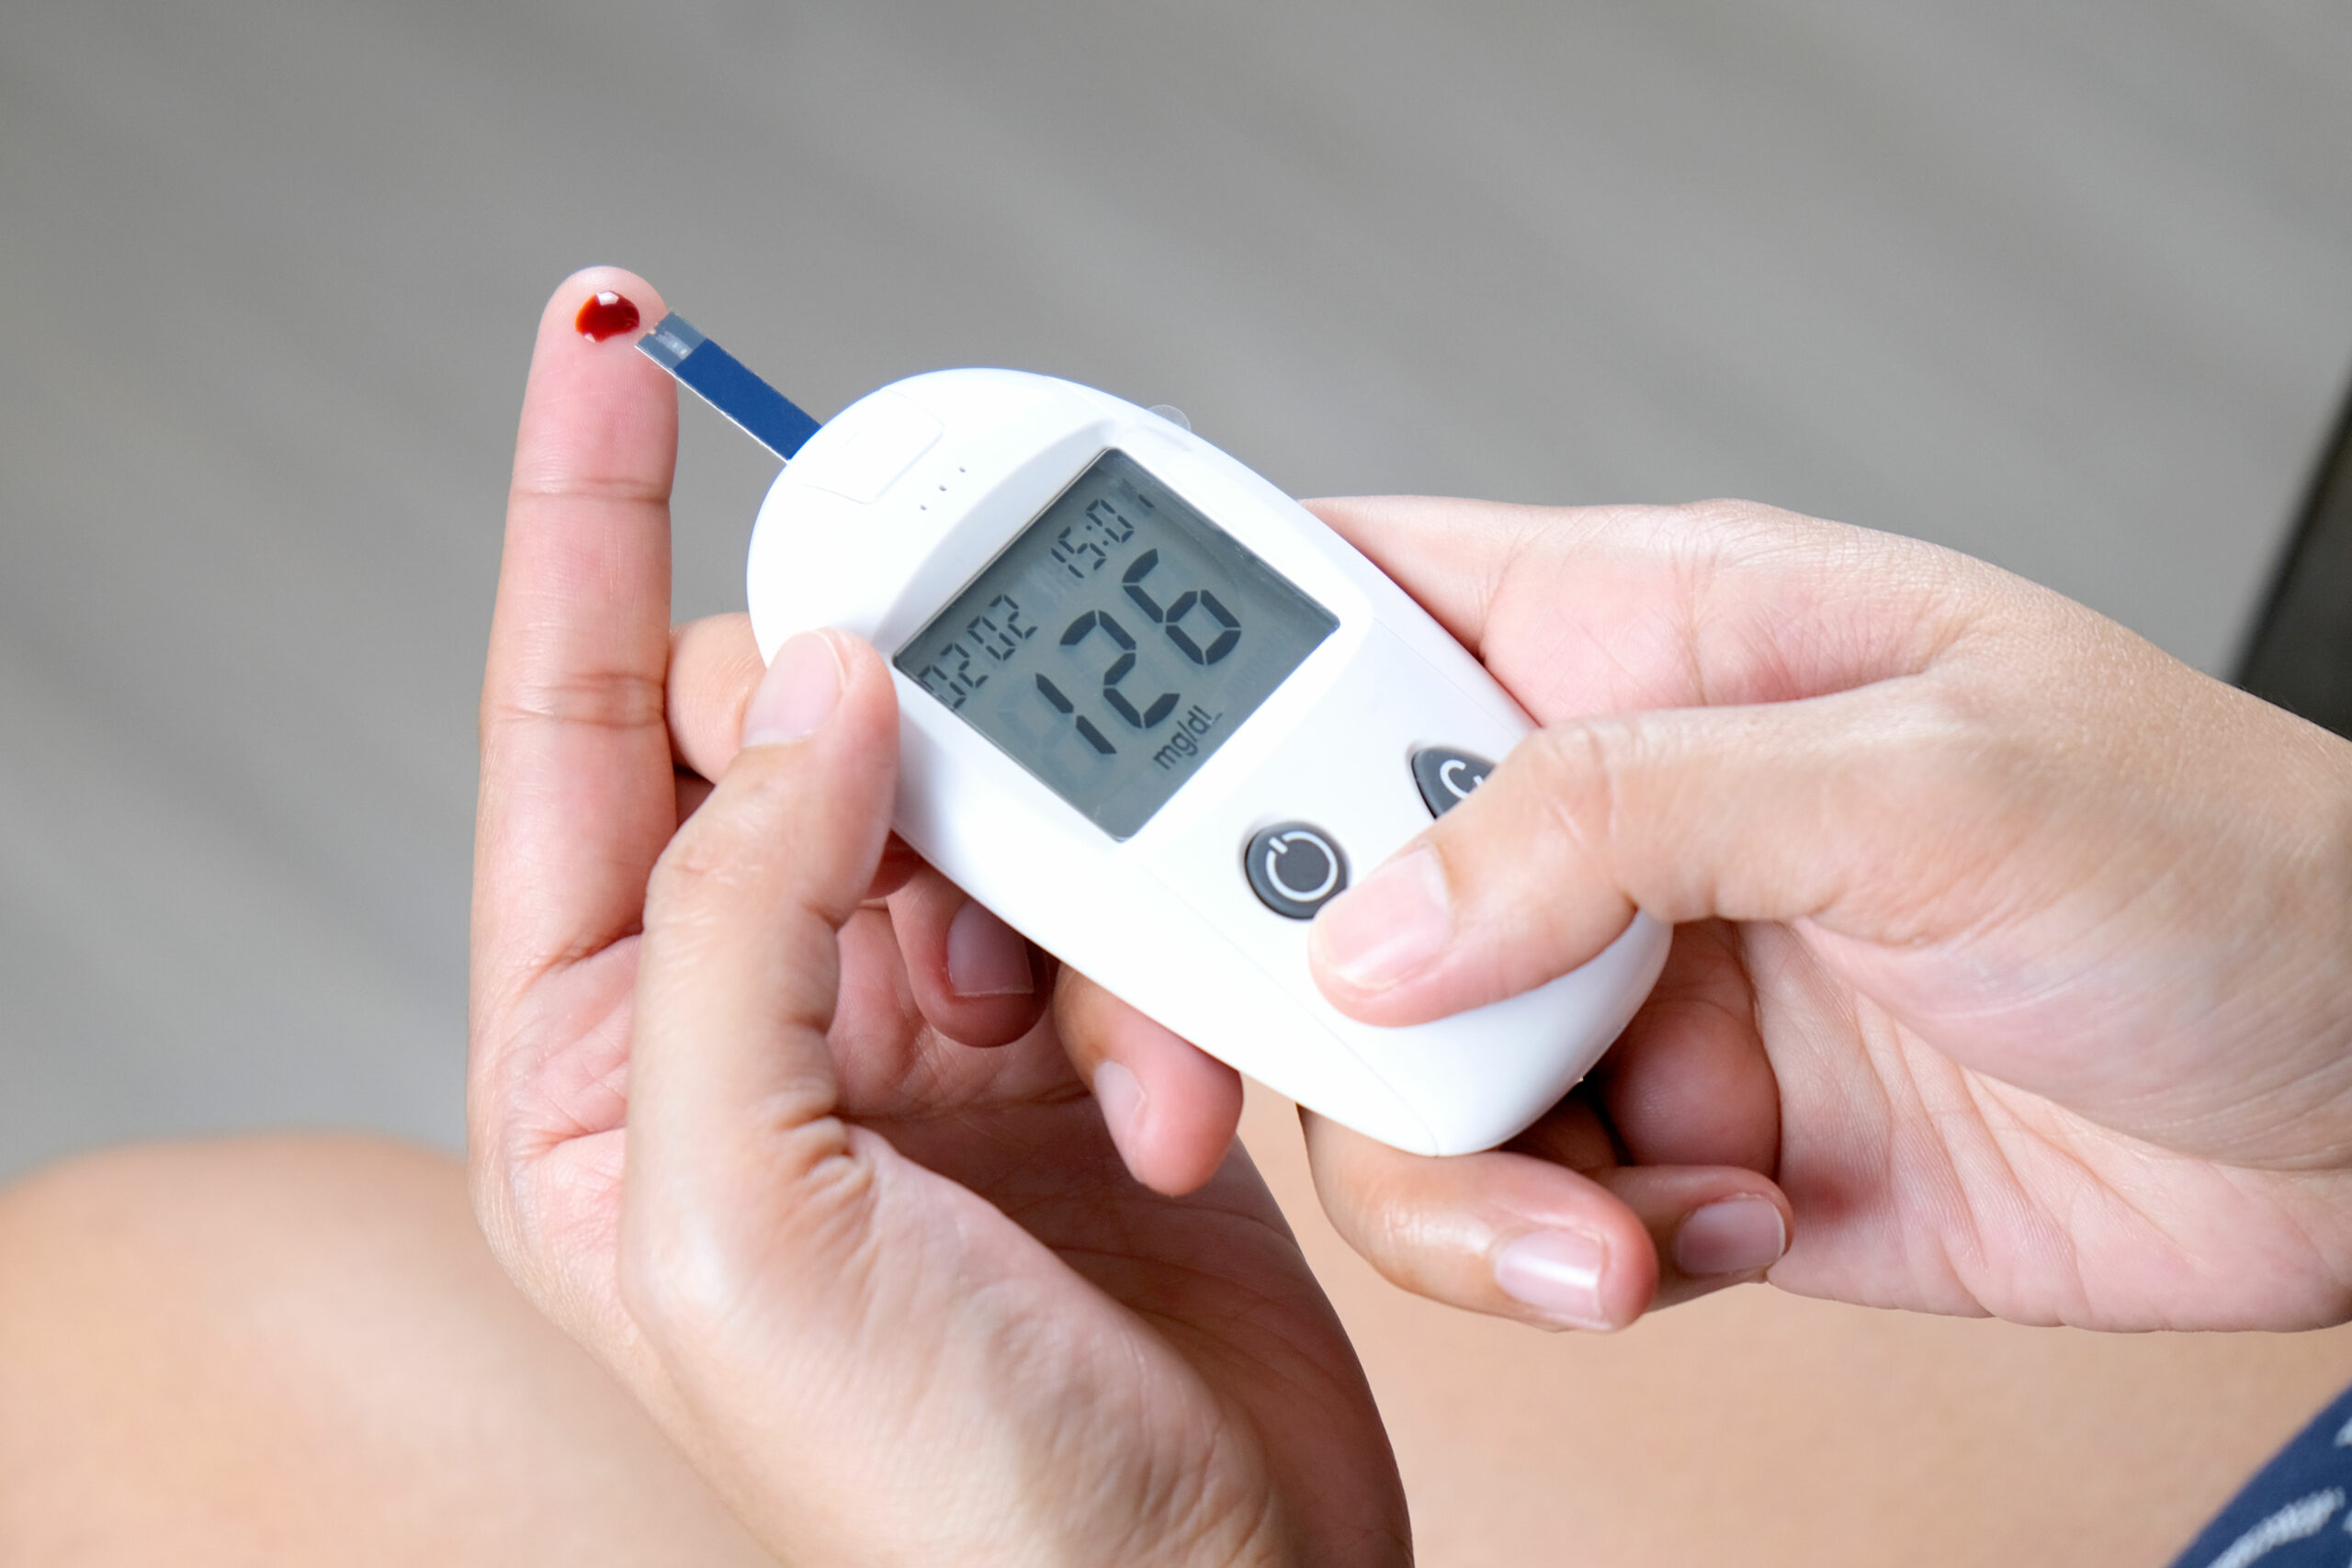 Cholesterin runter, Blutzucker rauf – Statine fördern Diabetesrisiko